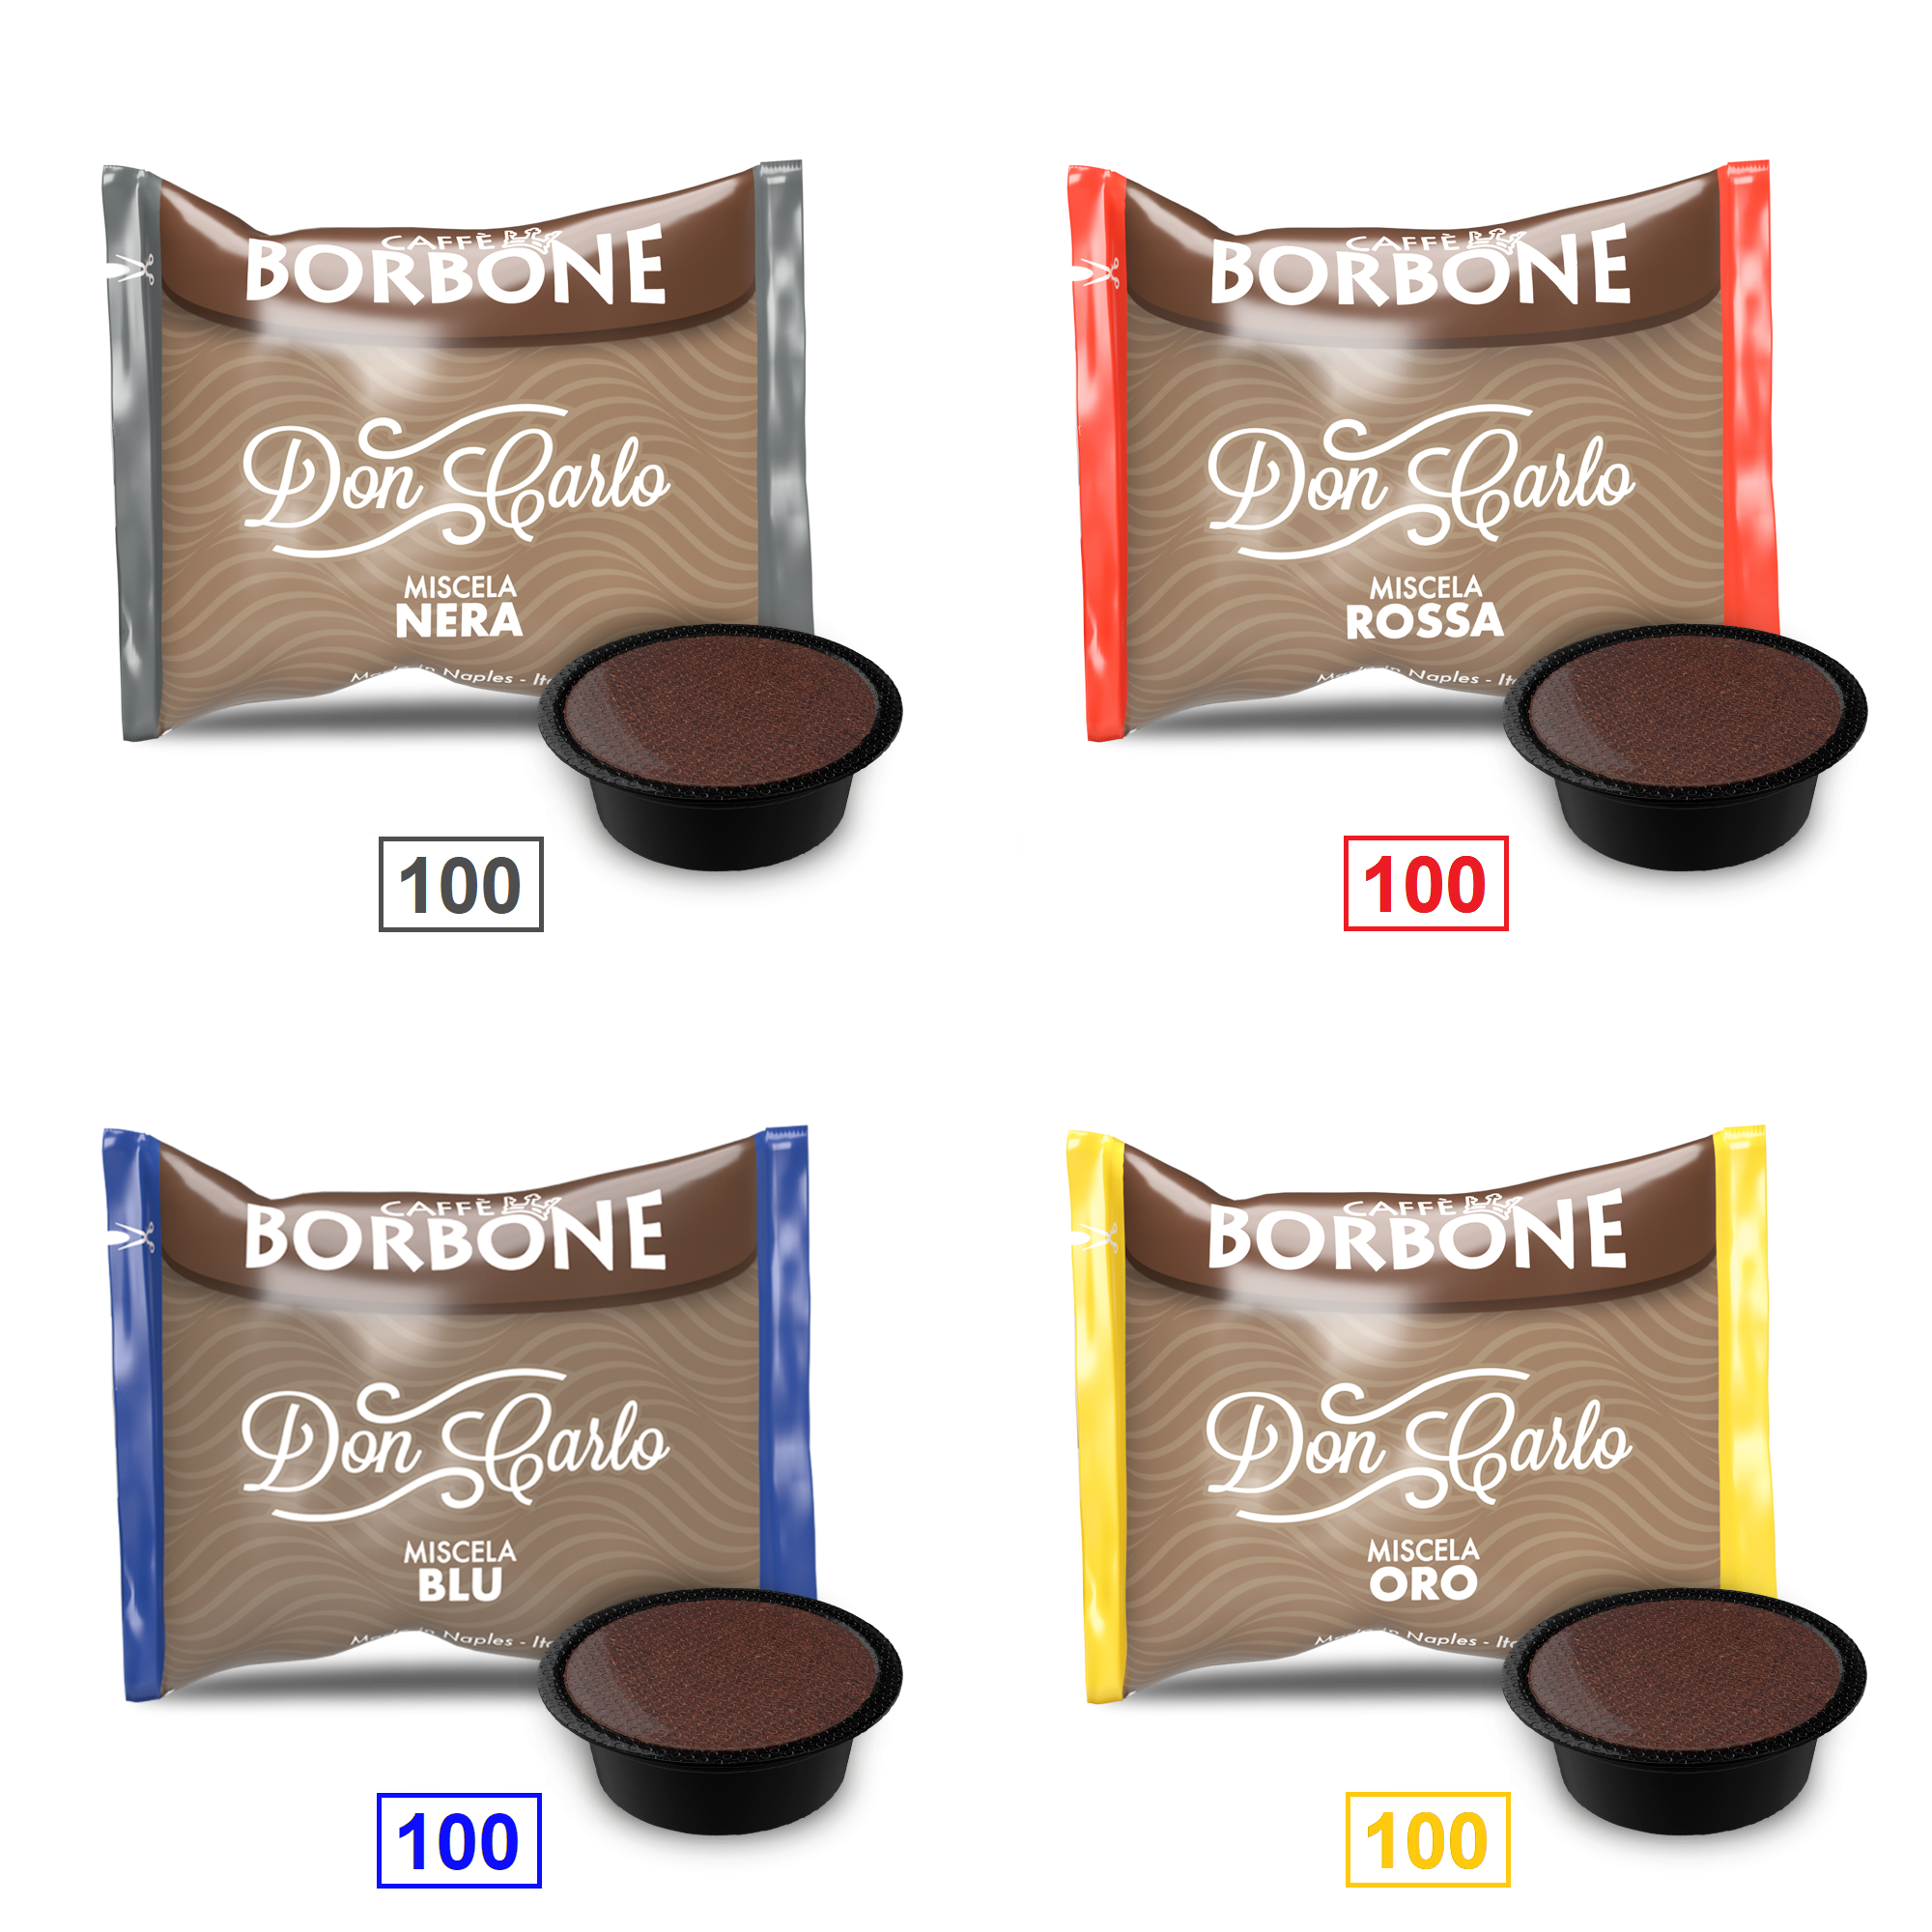 Caffè Borbone Mix 400 Capsule  Don Carlo - 100 Miscela Nera - 100 Miscela Rossa - 100 Miscela Blu - 100 Miscela Oro - Compatibili A Modo Mio